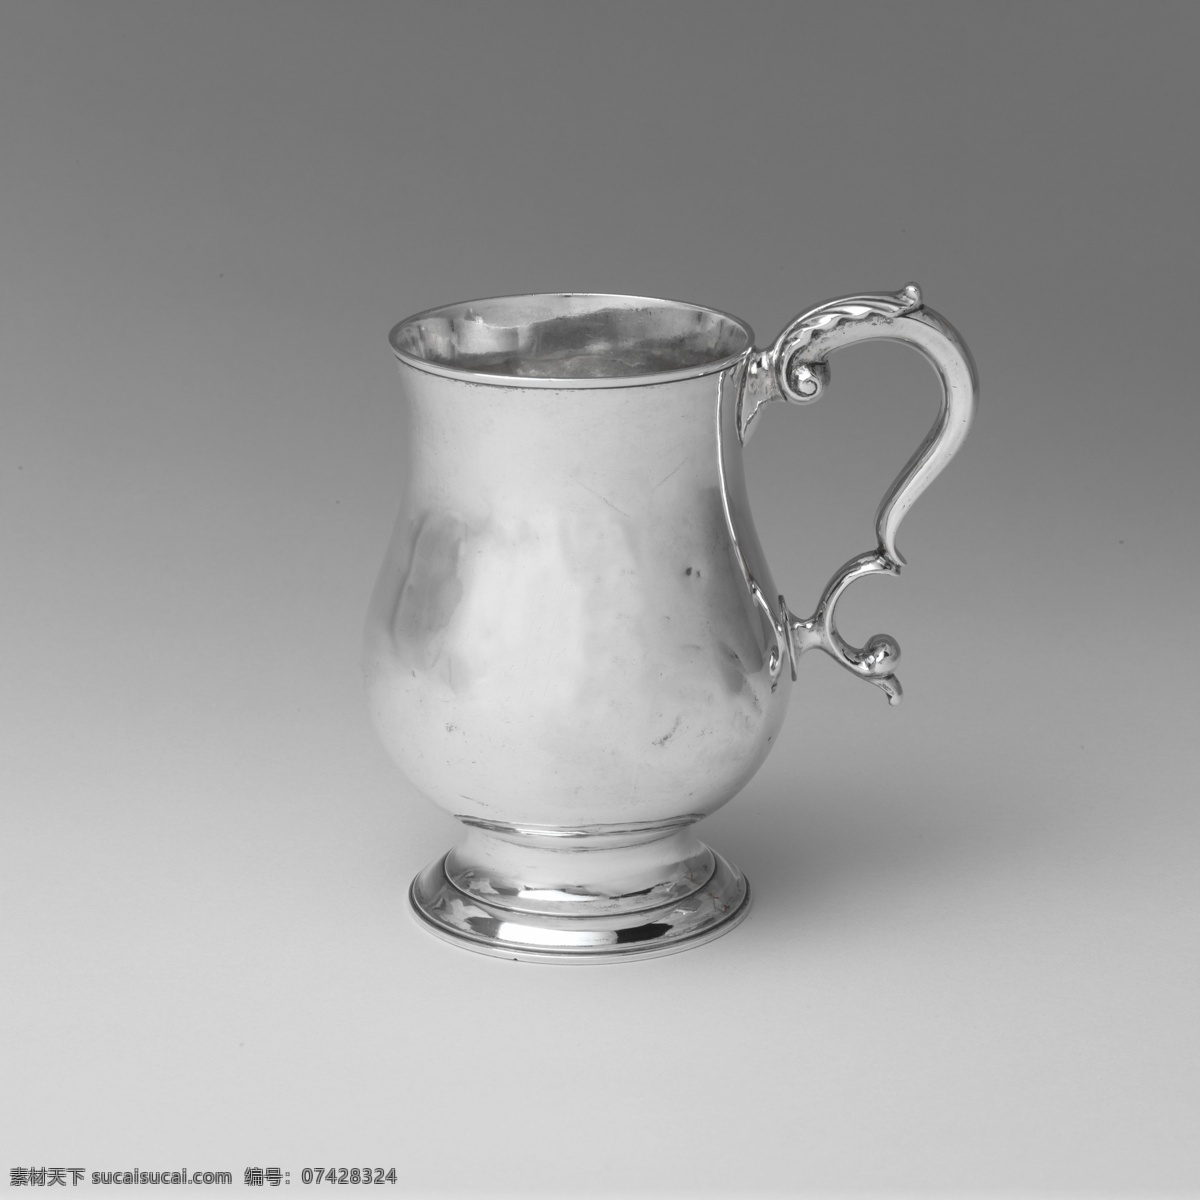 银质茶壶 银质 银 银子 茶壶 茶具 欧式 欧洲 传统文化 文化艺术